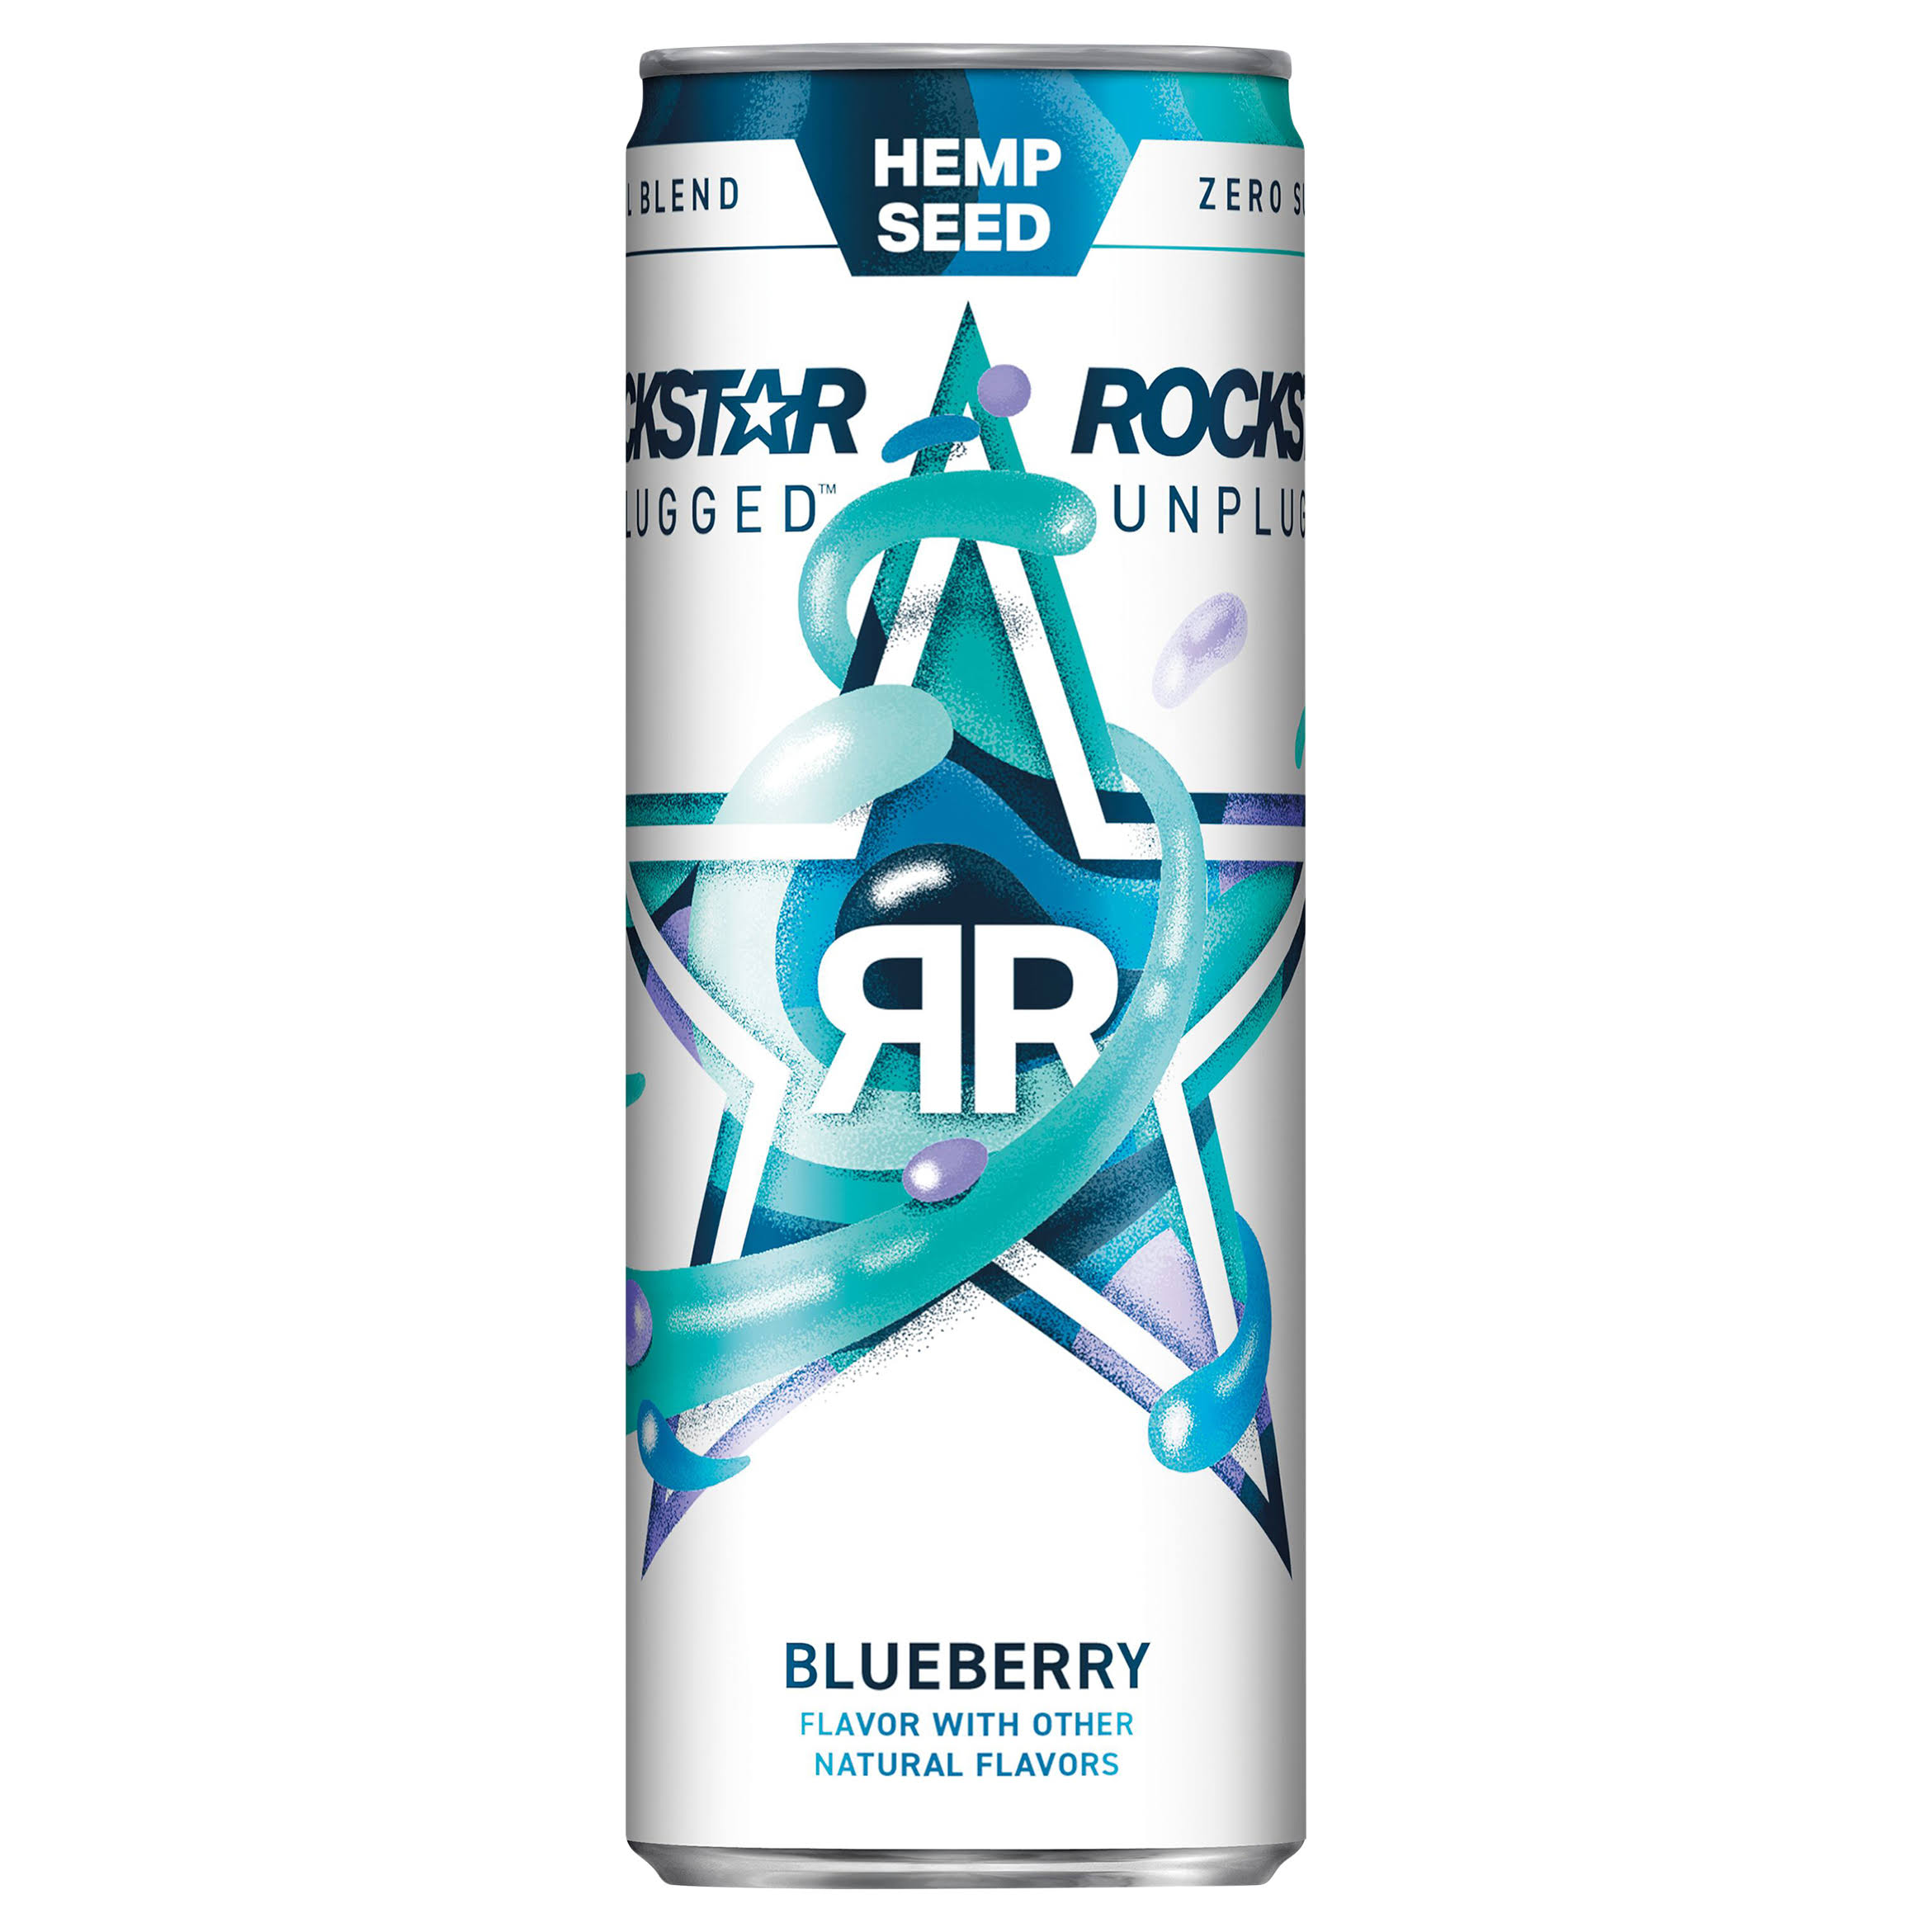 Rockstar Unplugged Energy Drink, Sugar Free, Hemp Seed, Blueberry - 12 fl oz